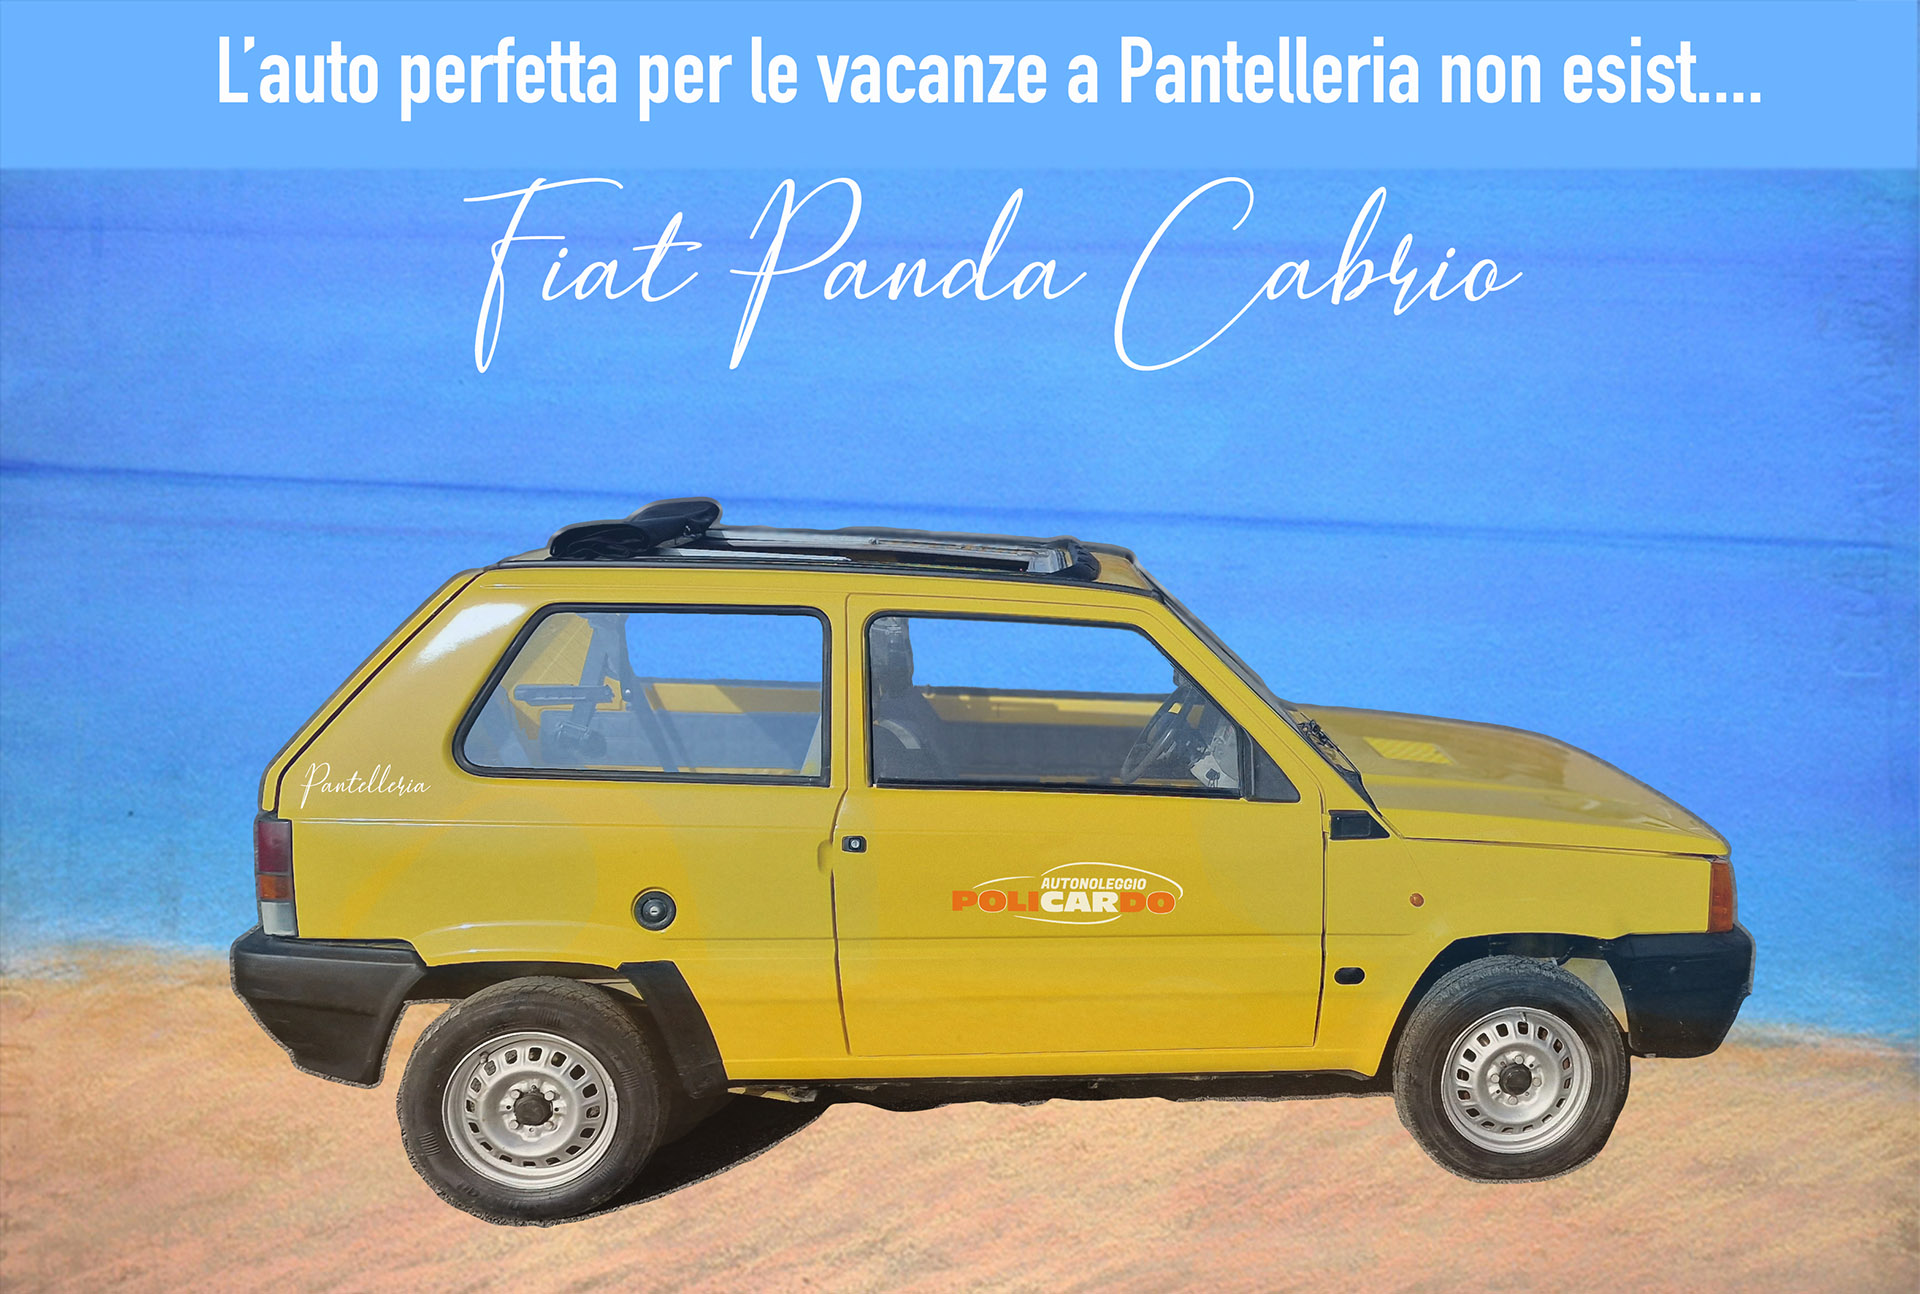 L'auto perfetta per Pantelleria non esist...